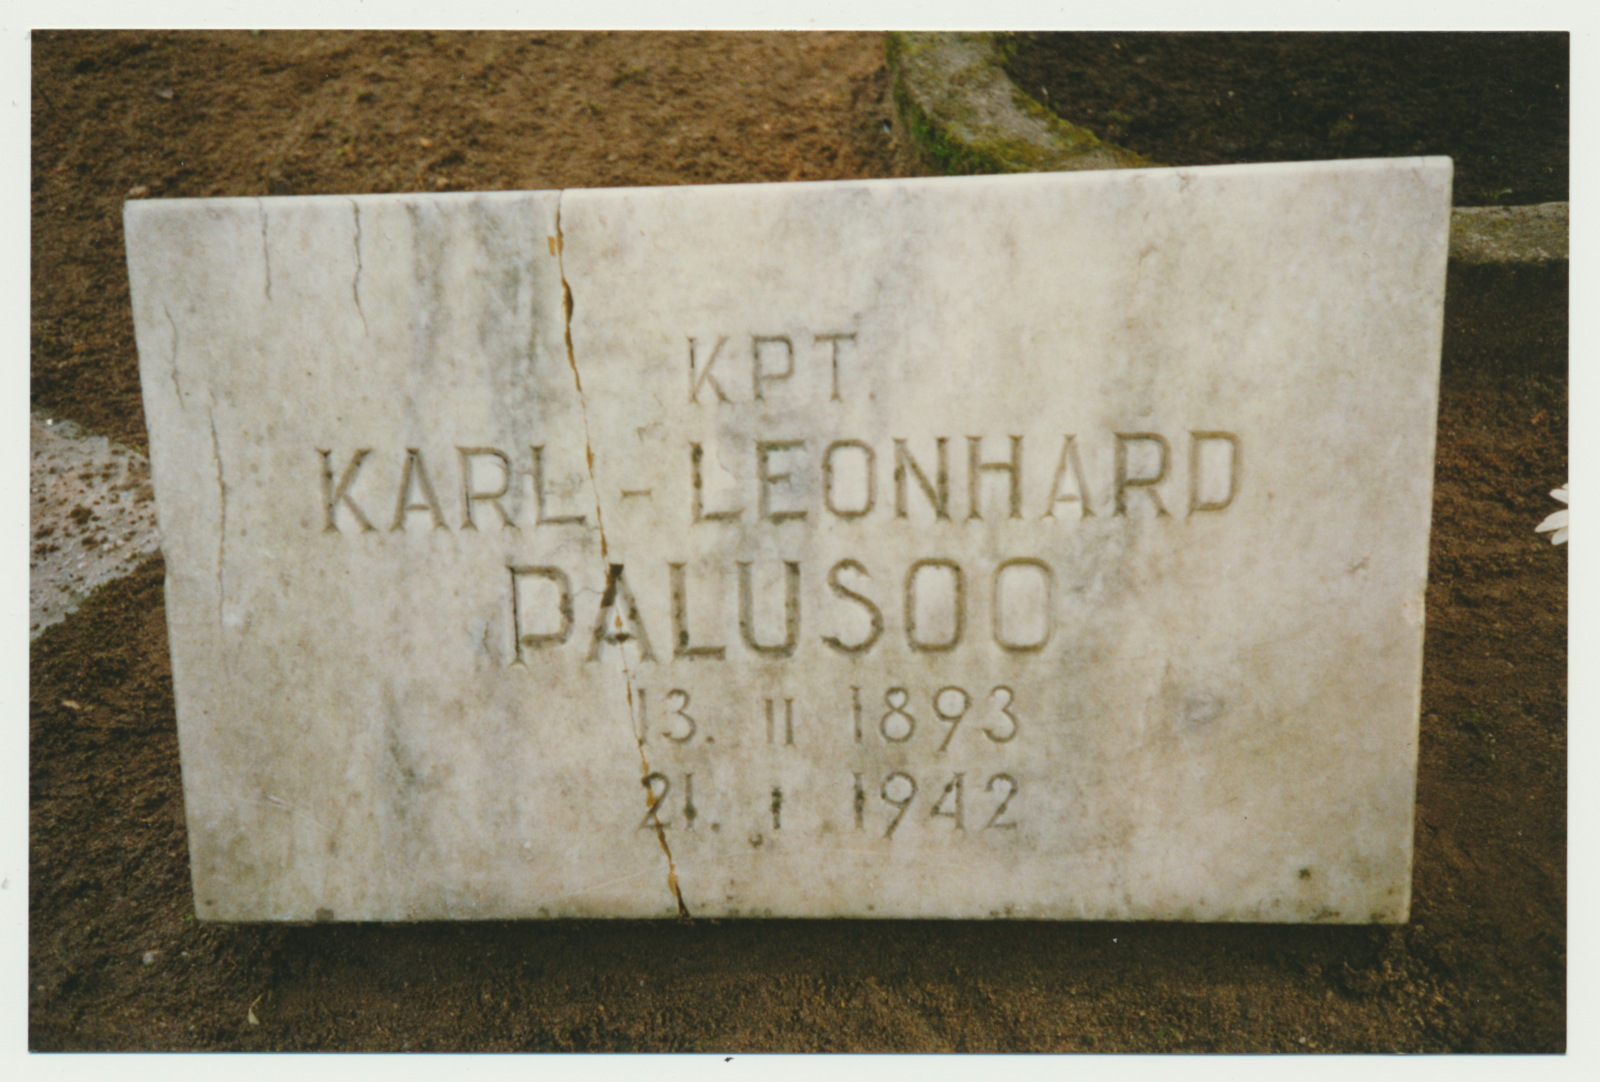 foto, Viljandi, Vana kalmistu, mälestuskivi, L. Palusoo, 1993, foto J. Pihlak